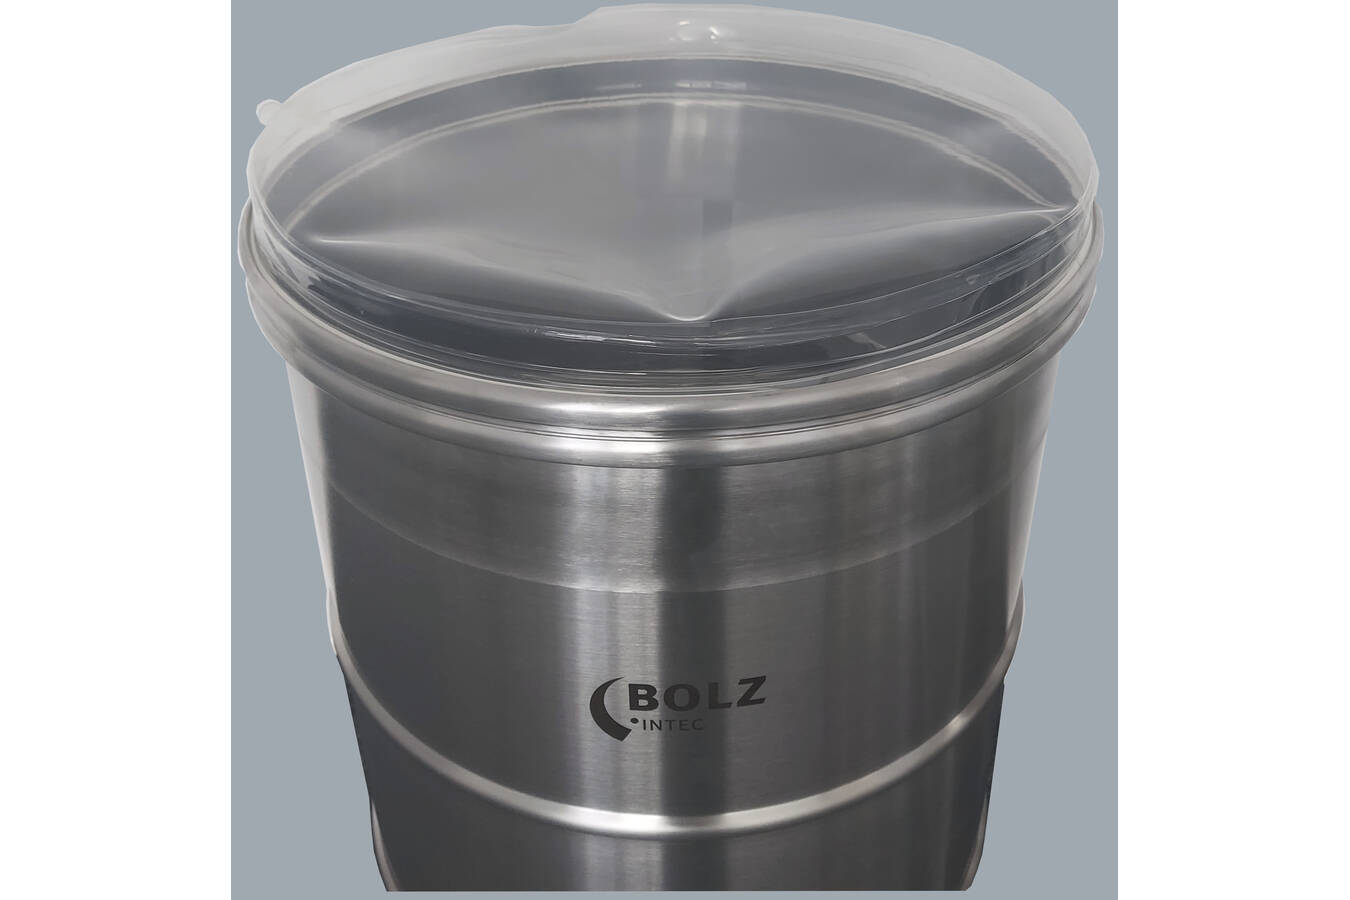 BOLZ-BFM®-Fass Ein bewährtes Patent aus Neuseeland, nun auch für Fässer.
Das Fass bietet max. Sicherheit: kein Auslaufen des Produktes,  staubdicht,  Sicht auf Produktfluss
